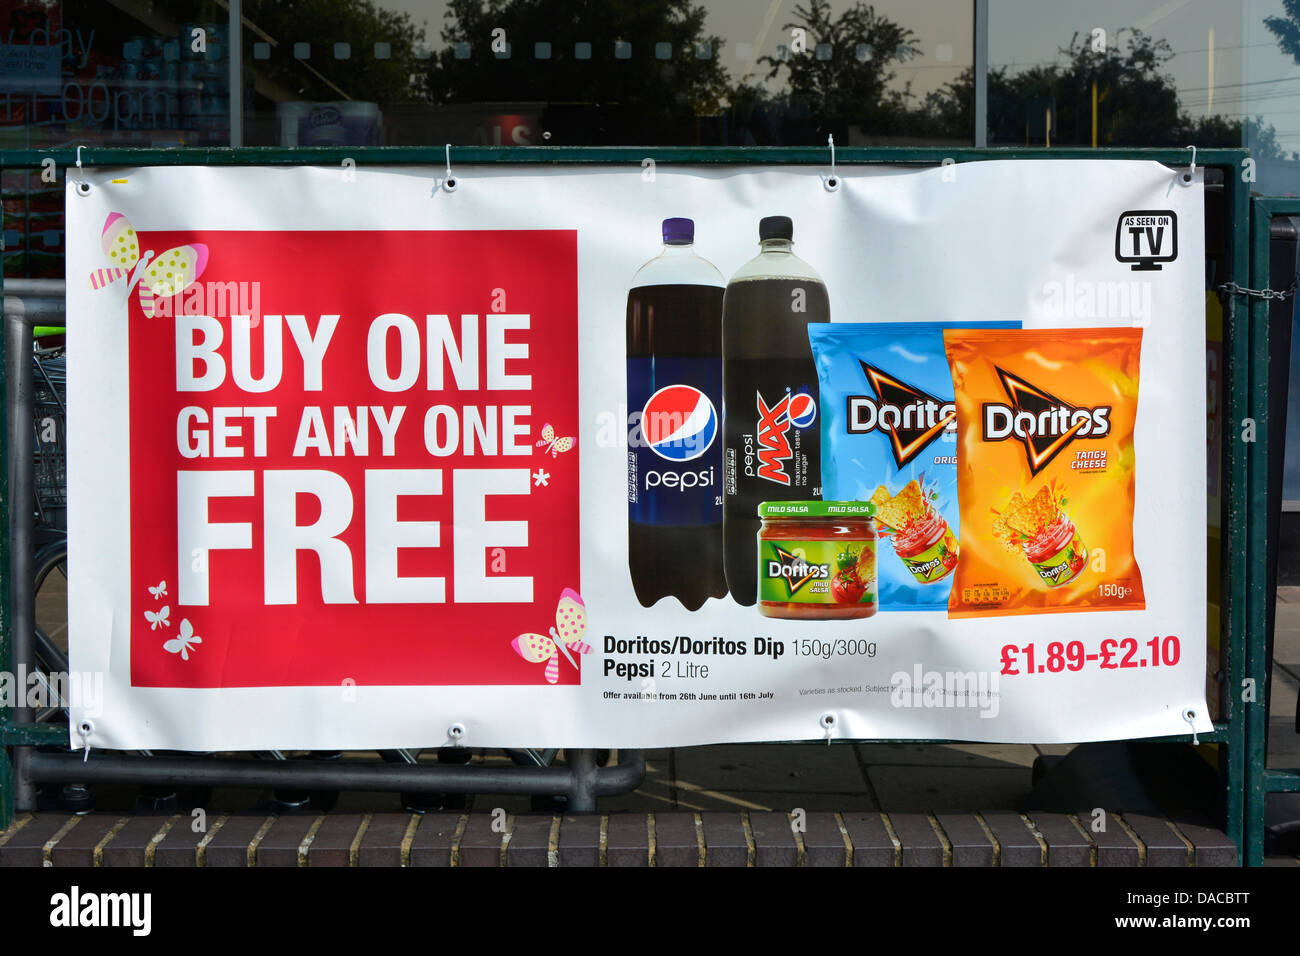 Banner auf Geländern vor dem örtlichen Supermarkt, der für „Buy One Get One“ wirbt, Sonderangebote für Speisen und Getränke (Jahresdatum entfernt) England Großbritannien Stockfoto